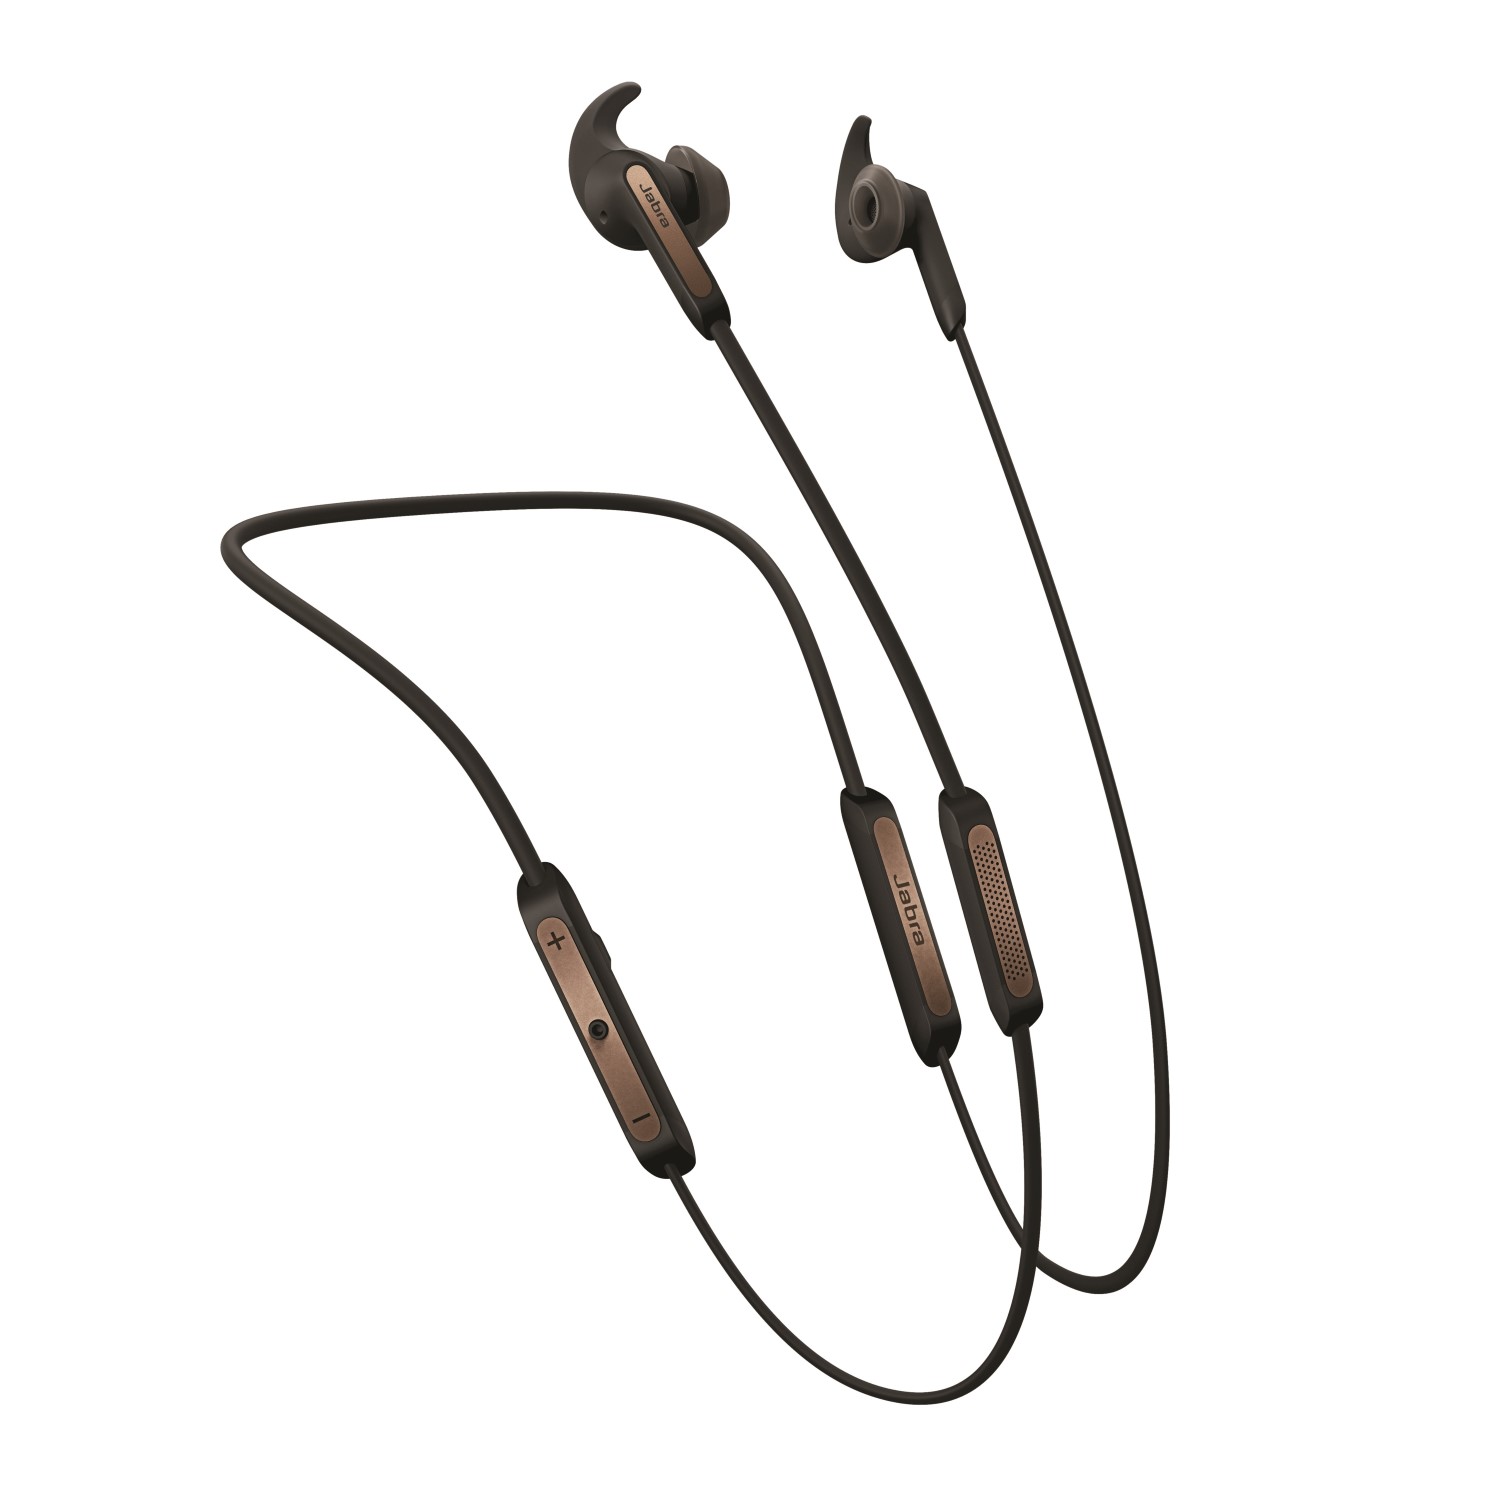 Jabra Elite 45e Wireless In-Ear Earphones Copper/Black